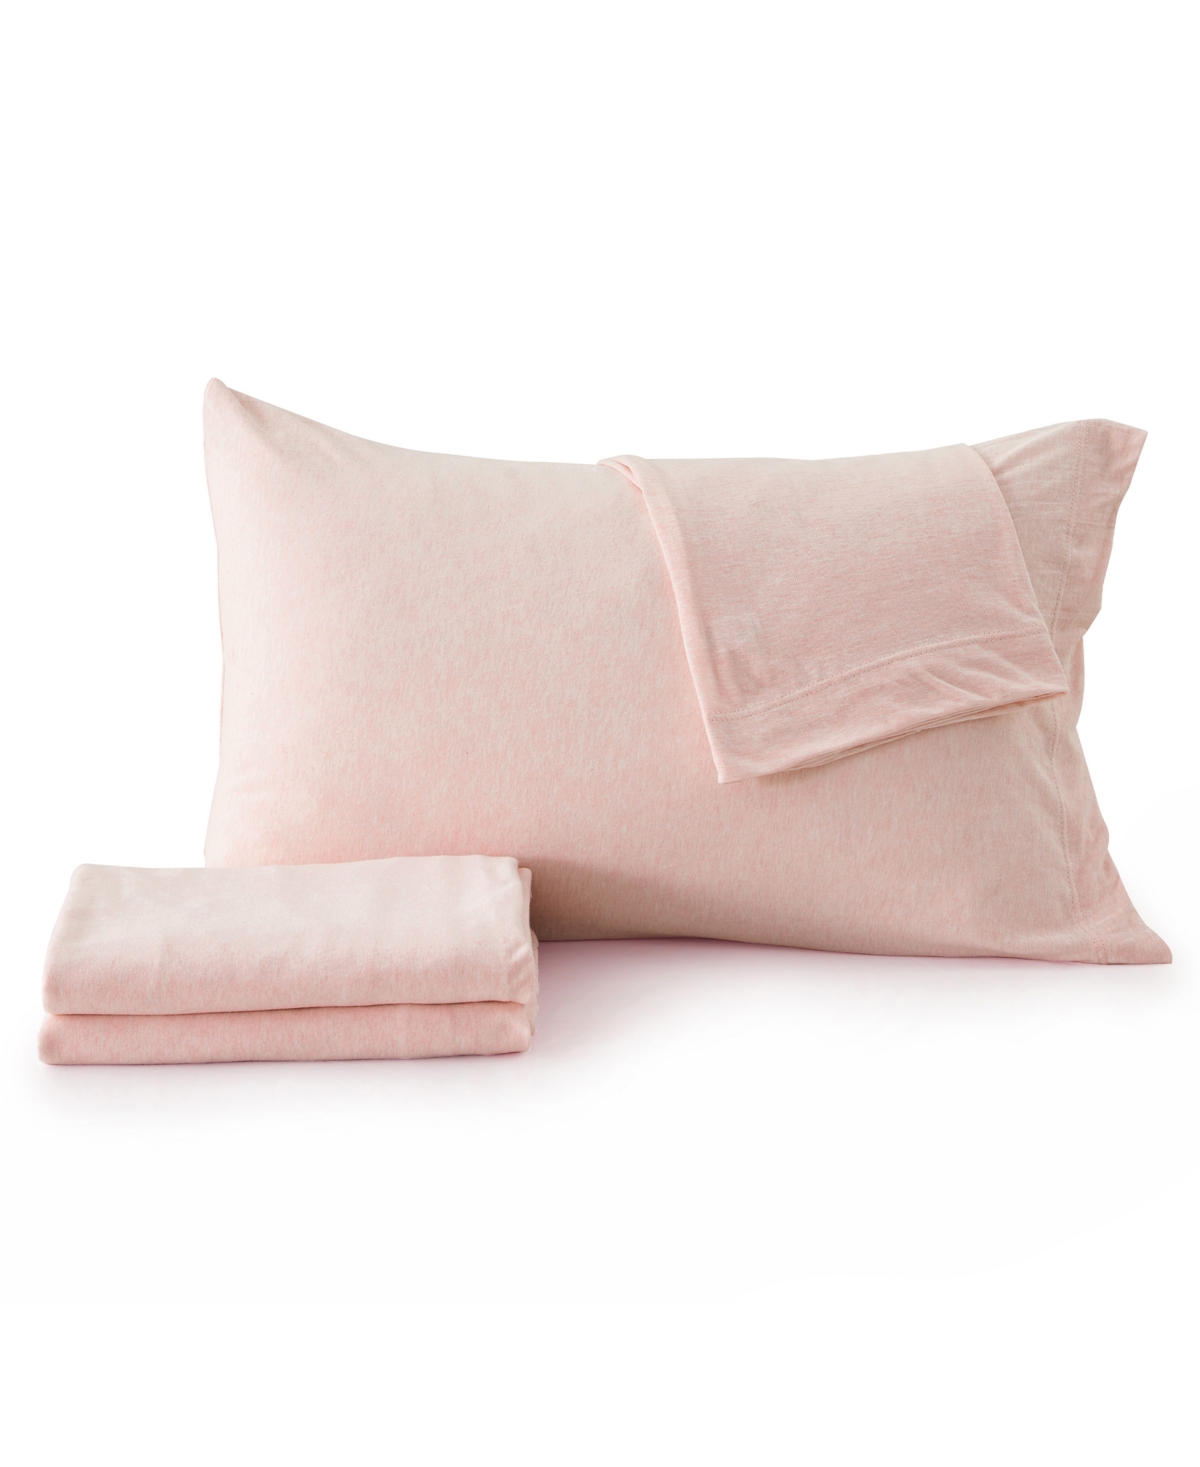 Premium Comforts Heathered Melange T-shirt Jersey Knit Cotton Blend 4 Piece Sheet Set, California King In Blush Pink